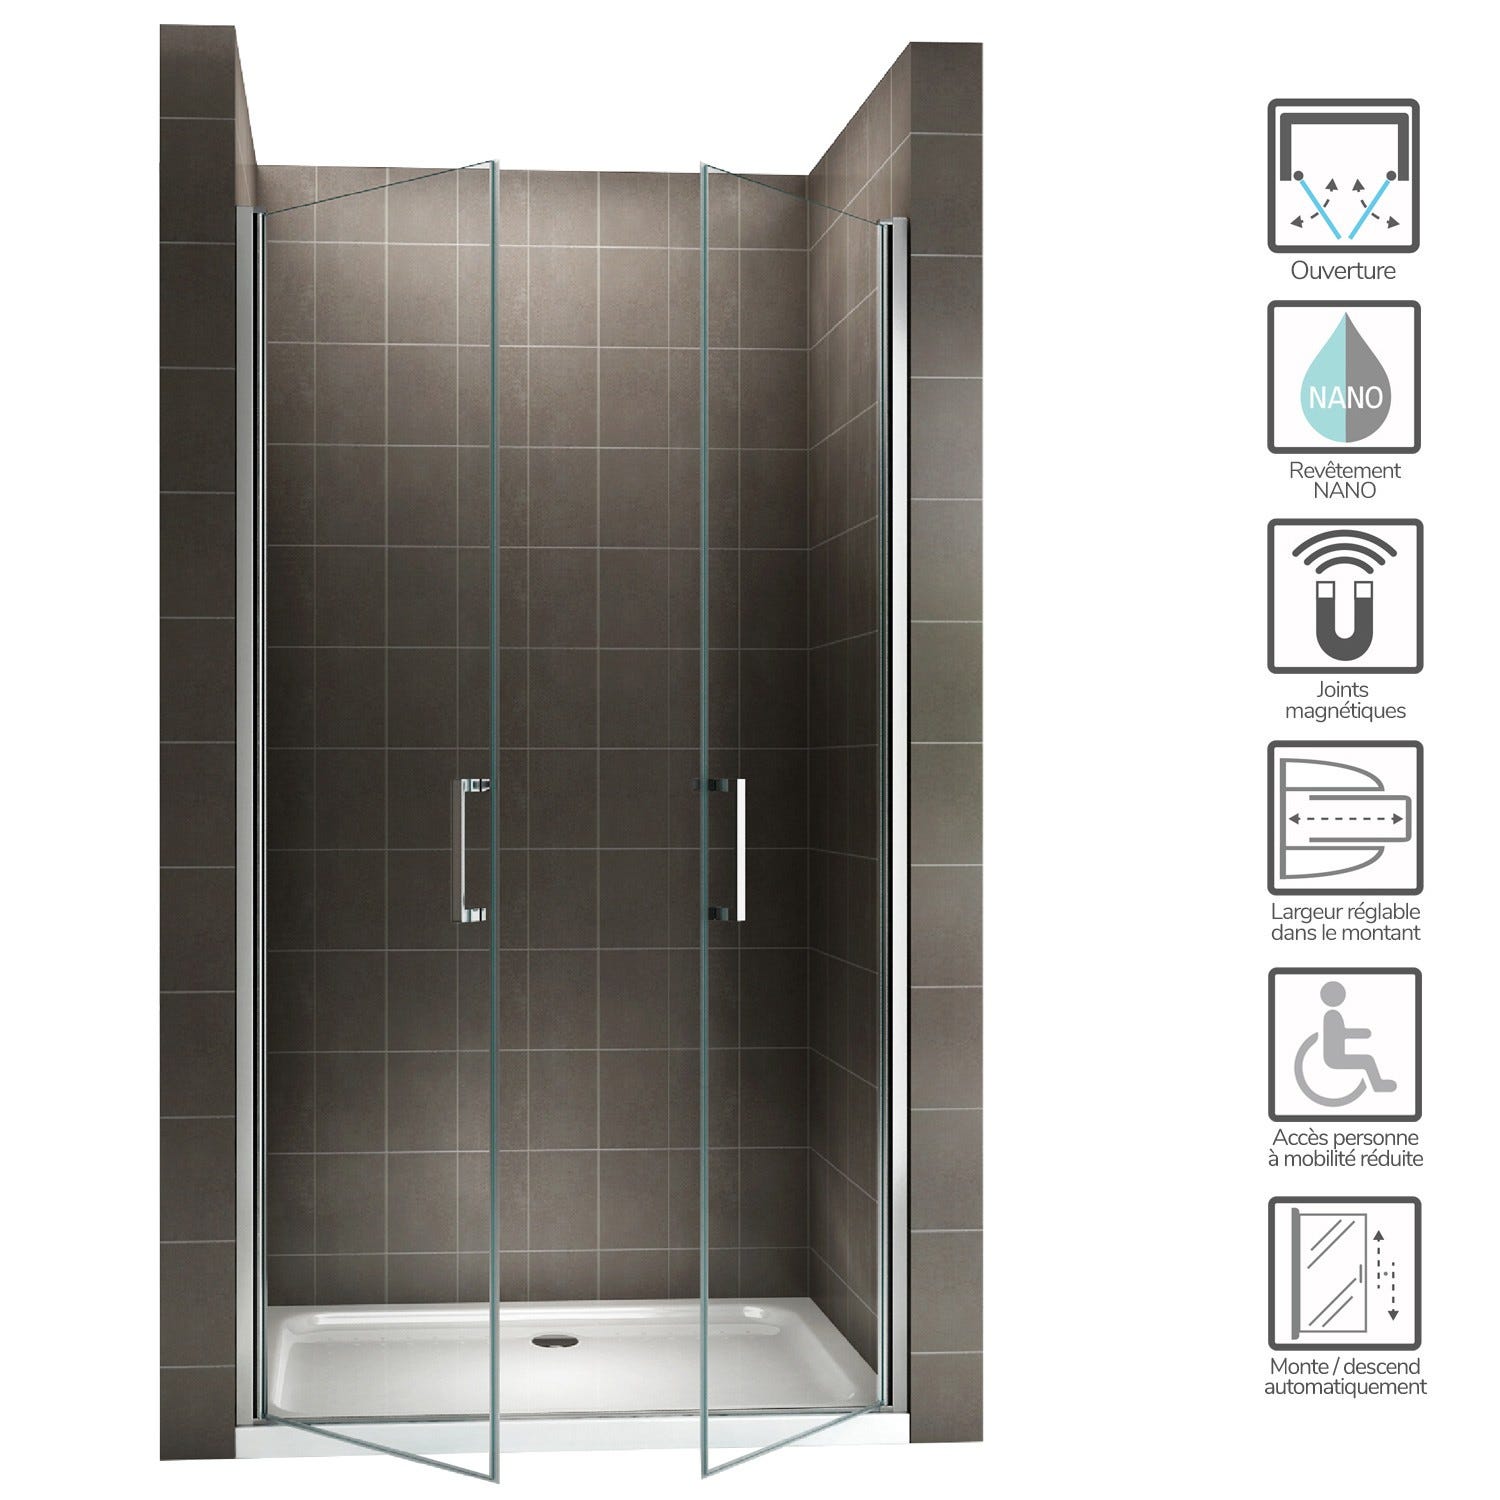 KAYA Porte de douche H 180 largeur réglable 83 à 86 cm verre transparent 1